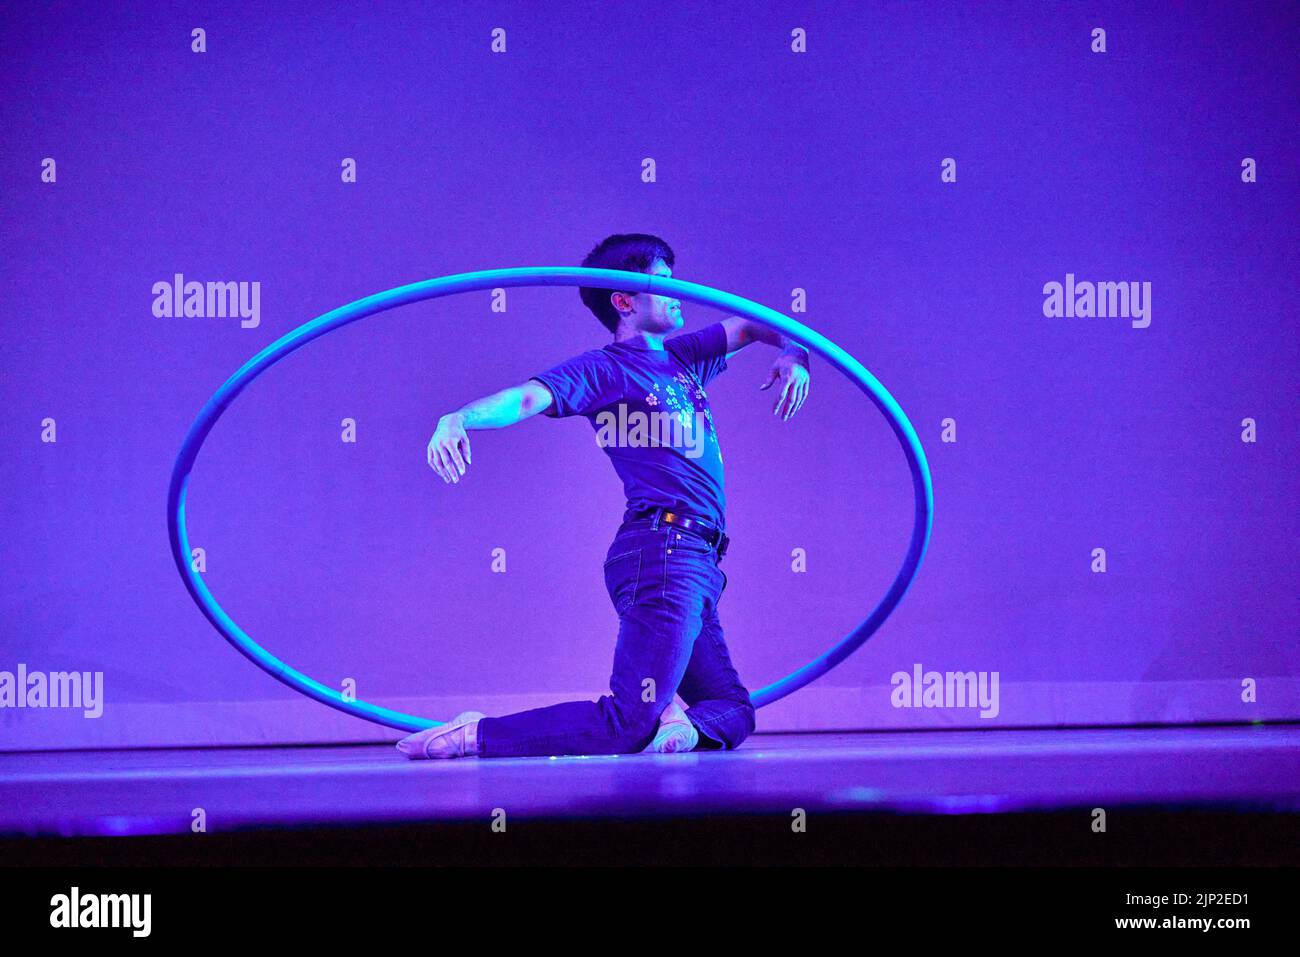 Un danseur de ballet contemporain s'agenouillait au milieu d'un panier sur une scène à fond violet Banque D'Images